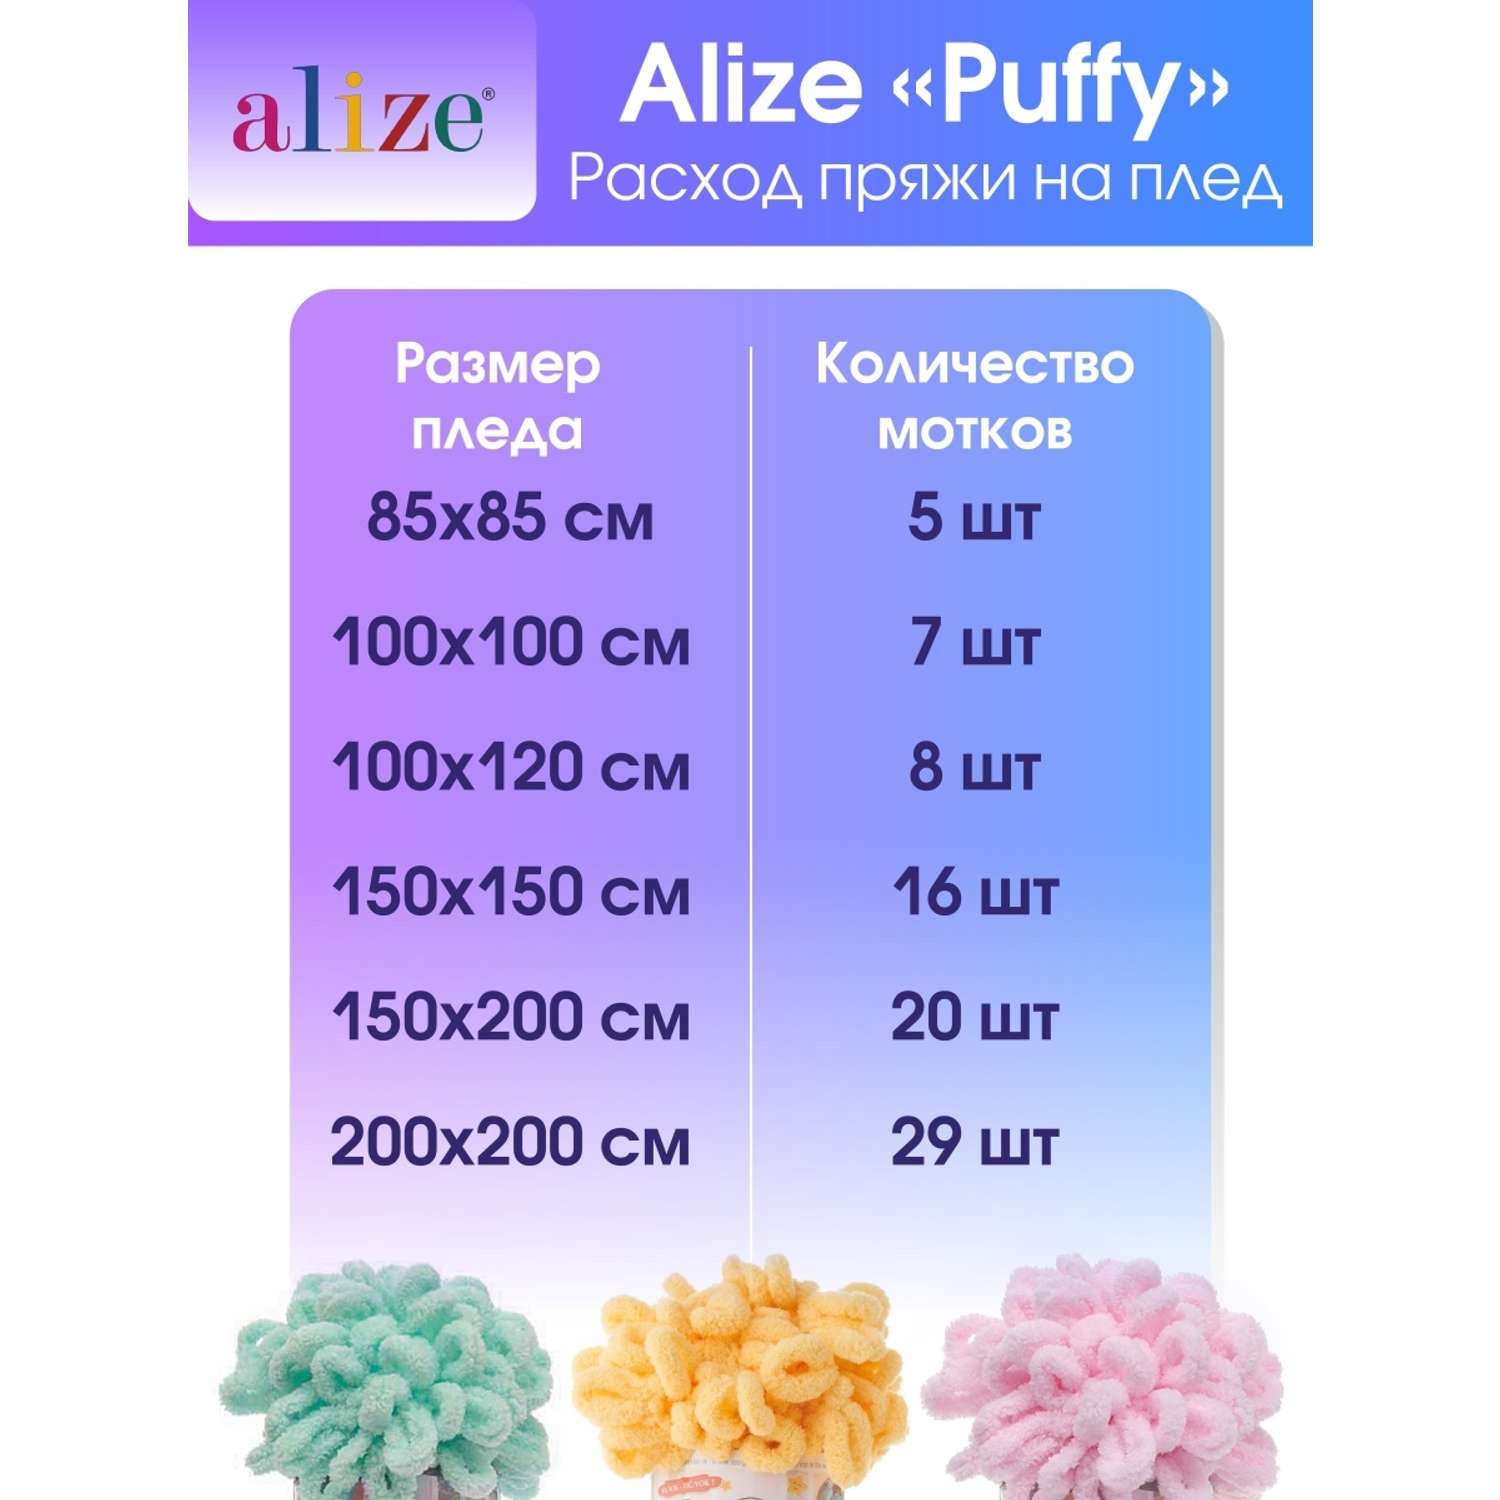 Пряжа для вязания Alize puffy 100 г 9 м микрополиэстер фантазийная плюшевая 161 пудра 5 мотков - фото 7